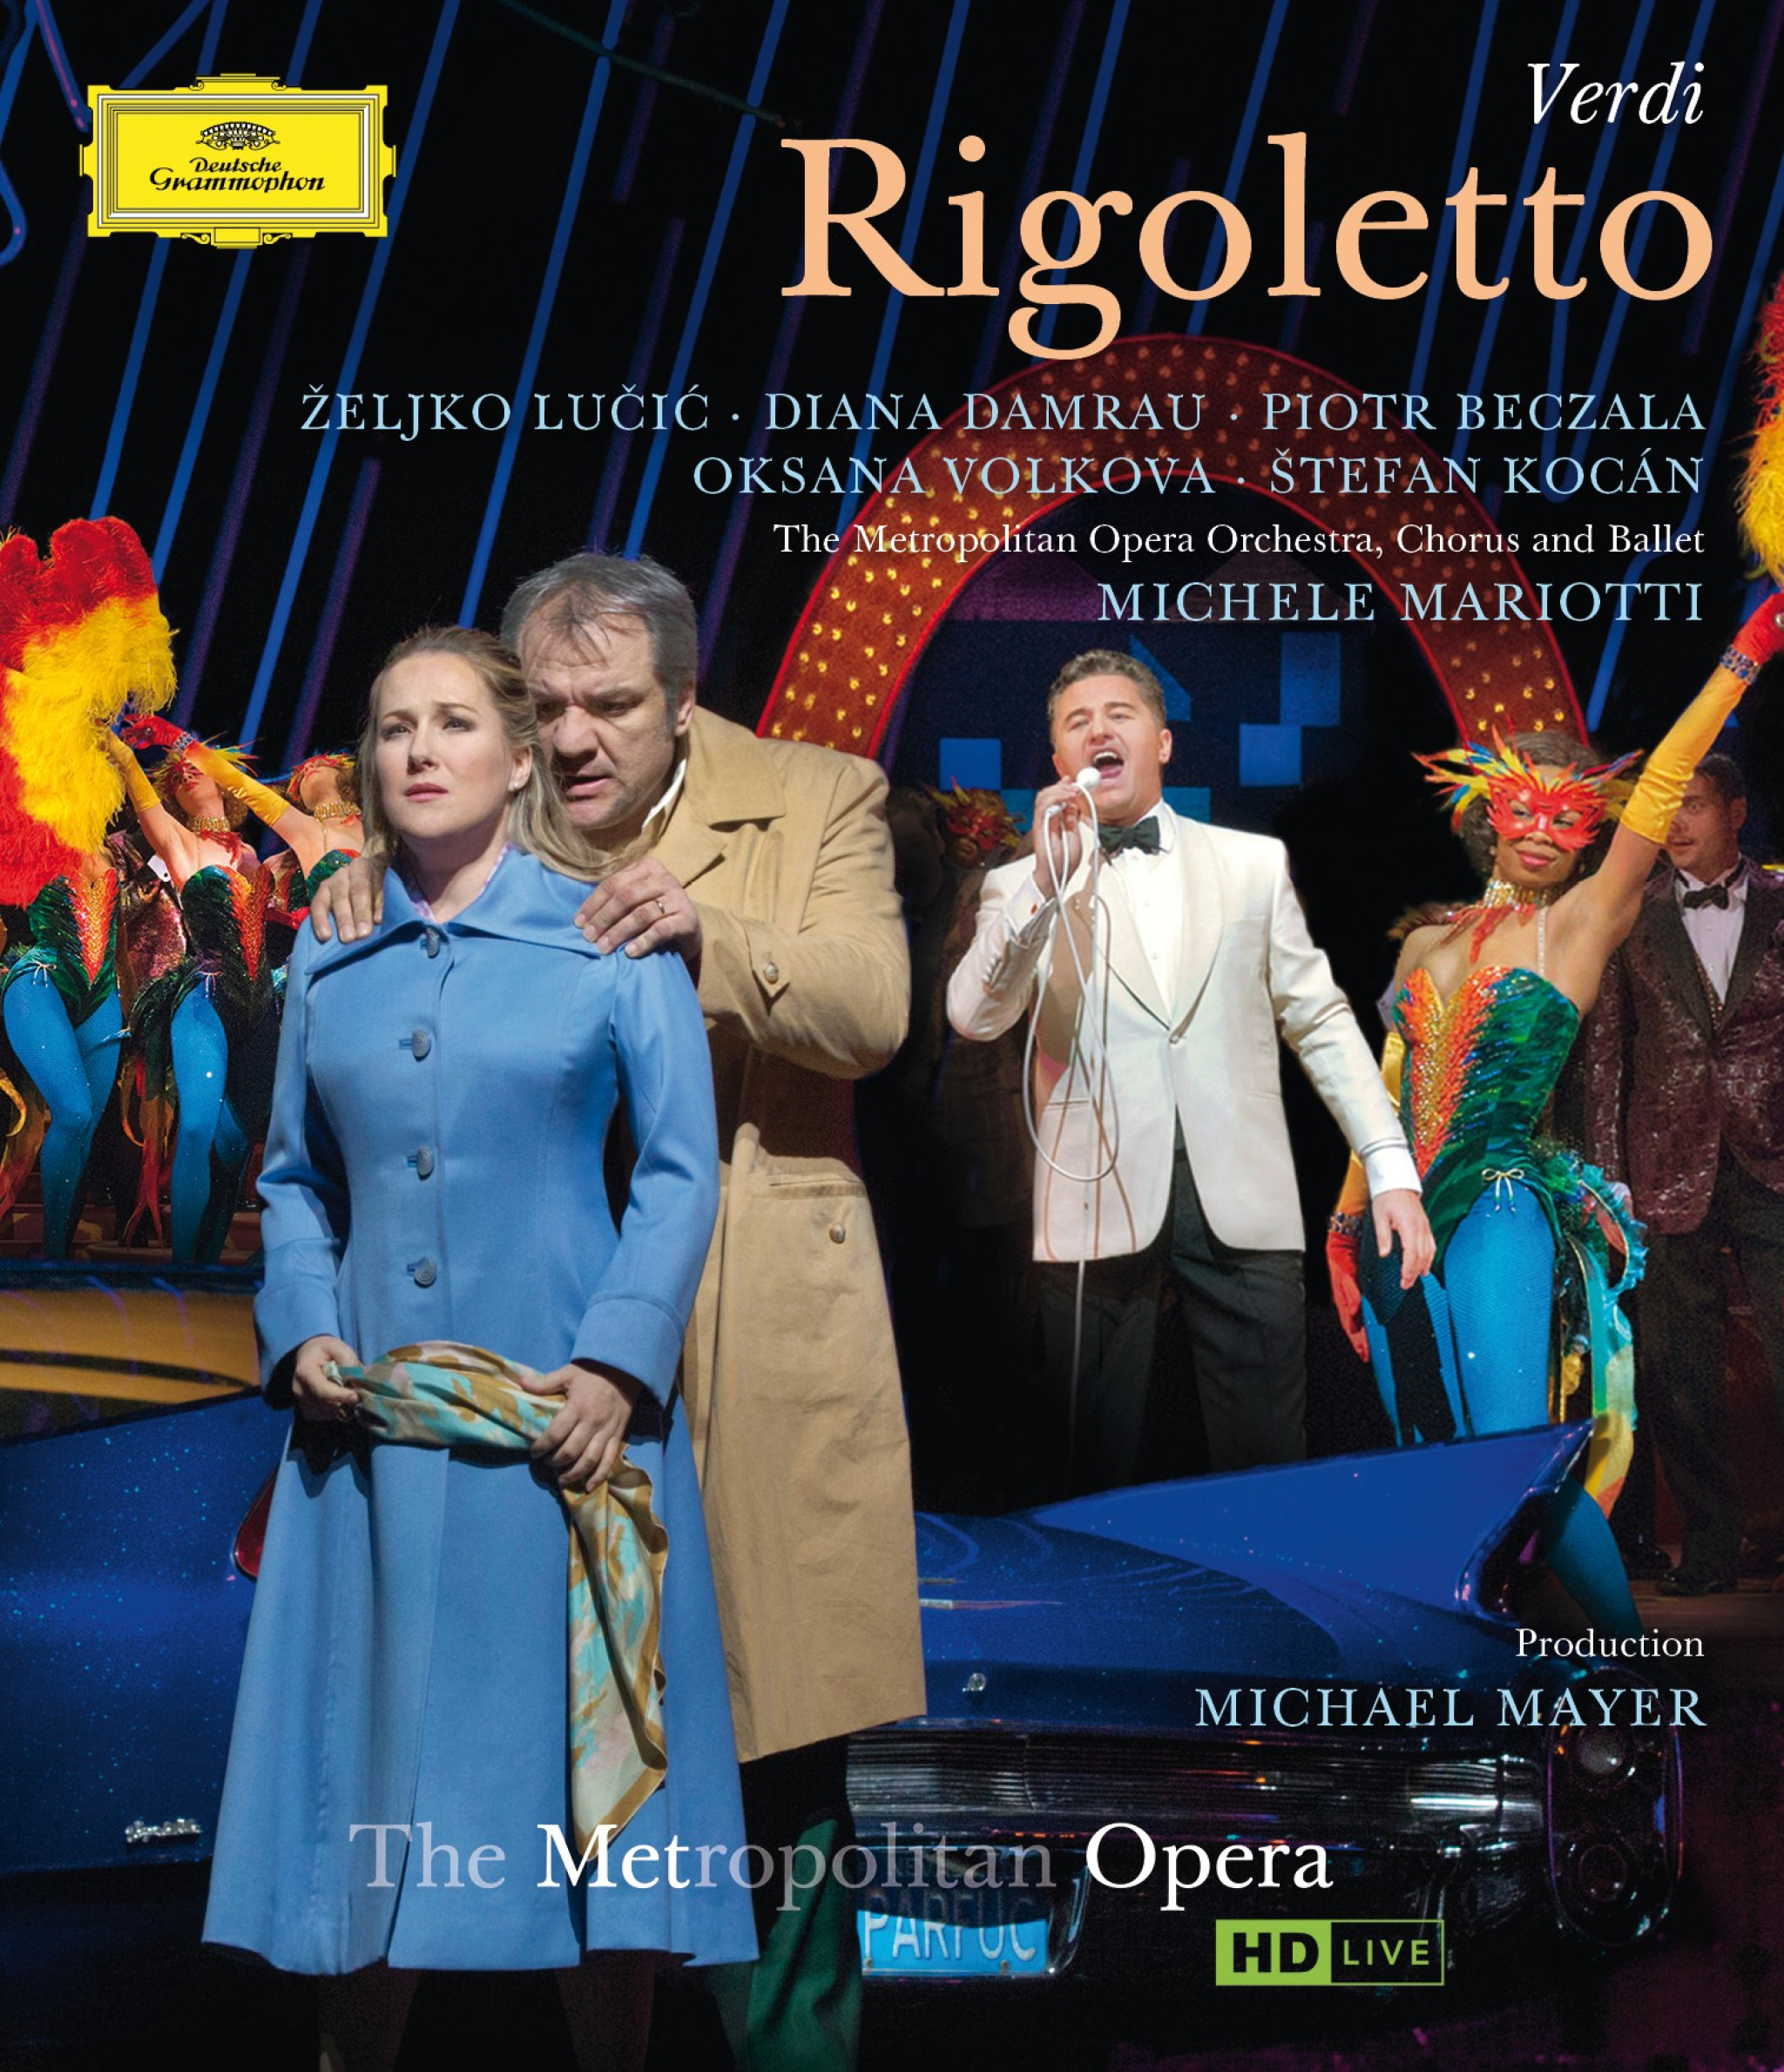 Verdi: Rigoletto Blu-ray